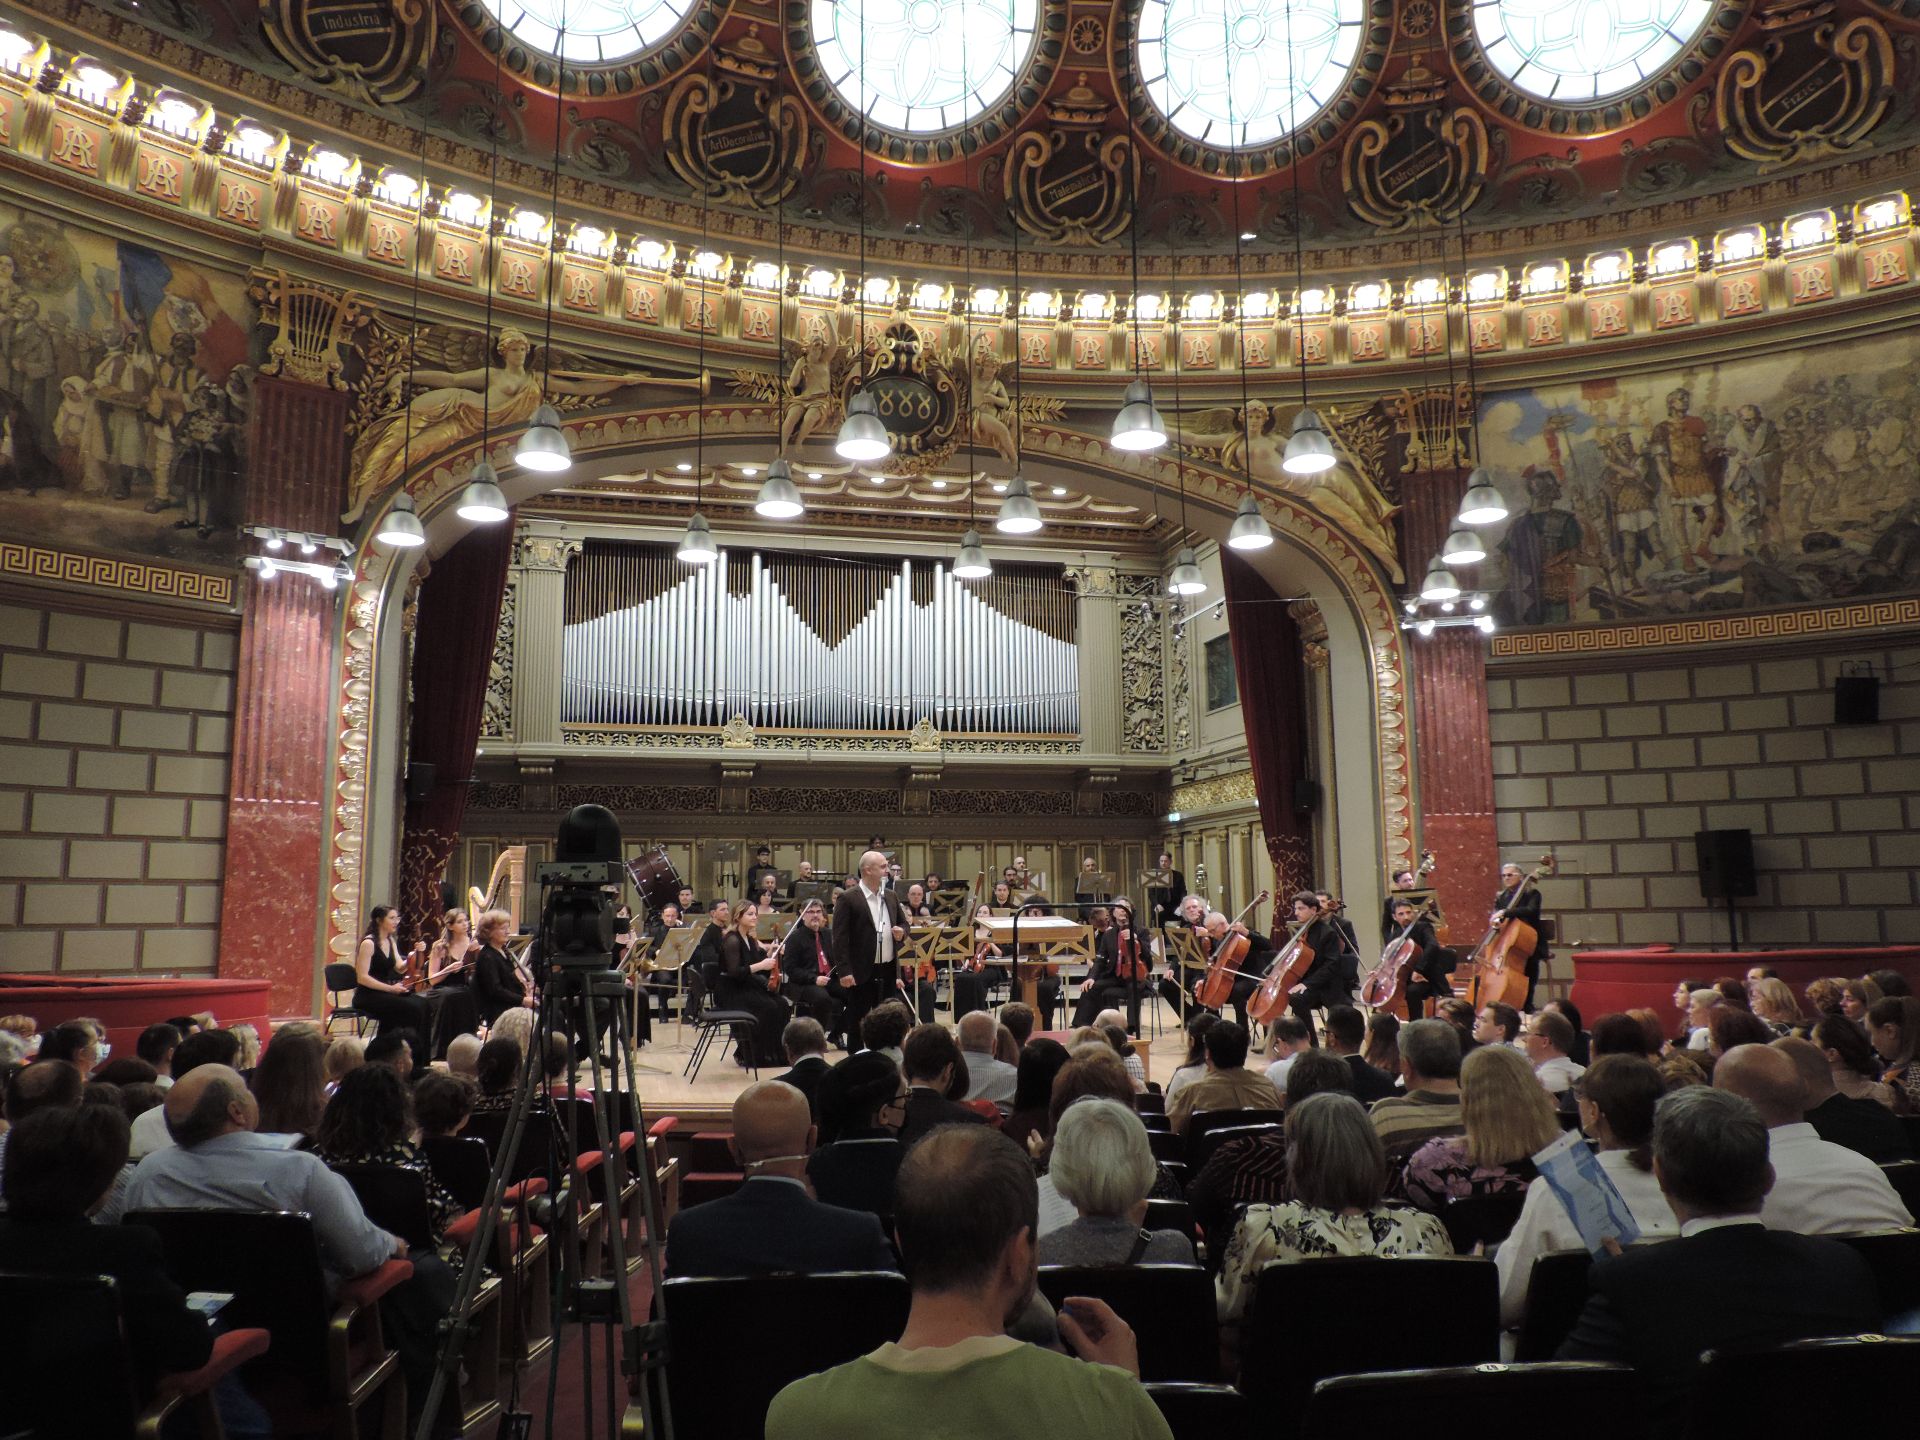 Președinția italiană a Consiliului Europei, sărbătorită la Ateneu cu muzică de operă